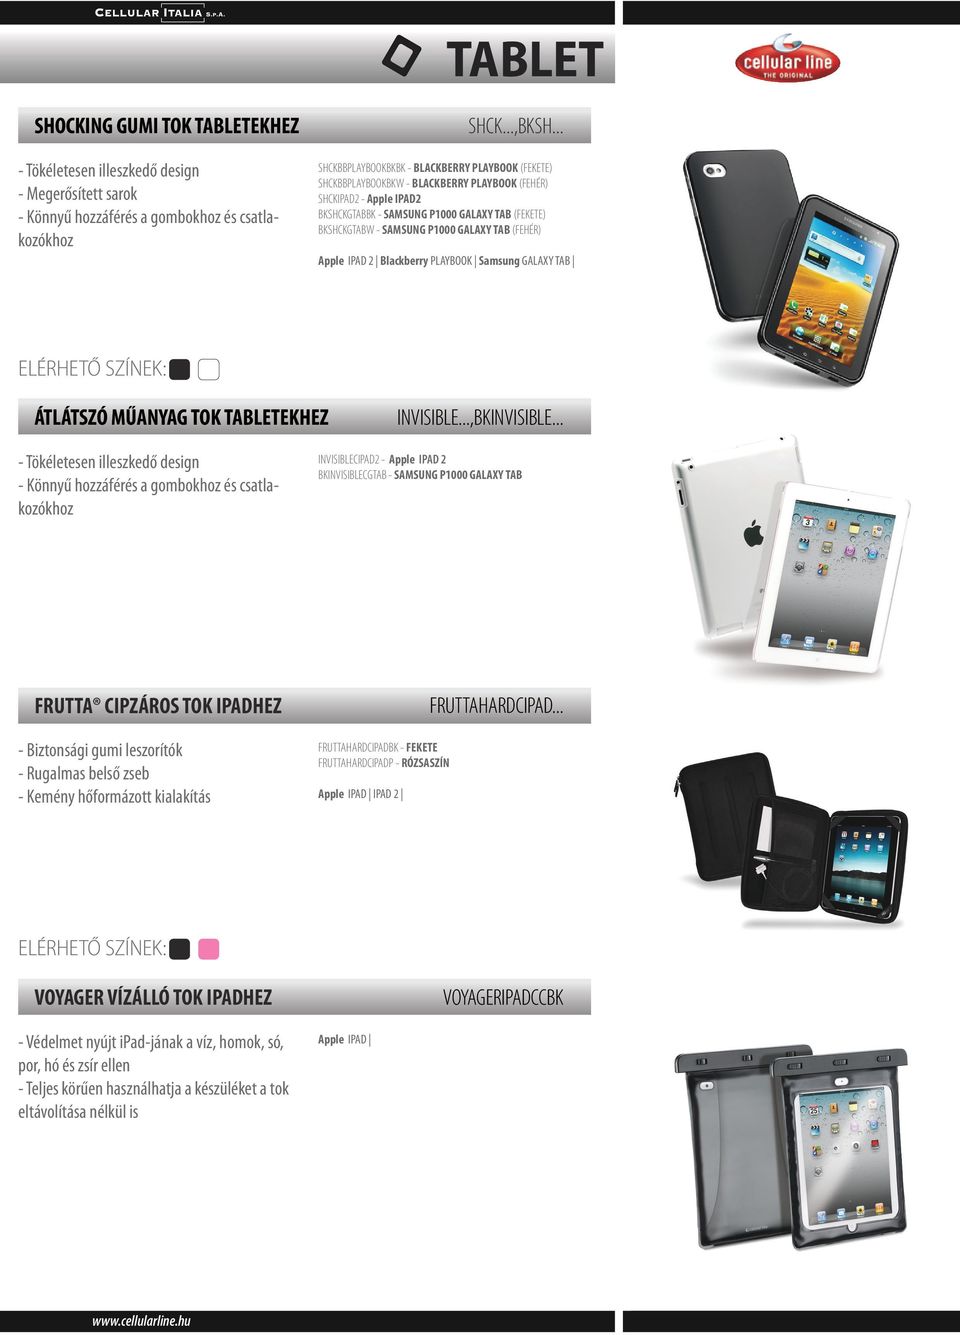 P1000 GALAXY TAB (FEHÉR) Apple IPAD 2 Blackberry PLAYBOOK Samsung GALAXY TAB ÁTLÁTSZÓ MŰANYAG TOK TABLETEKHEZ INVISIBLE...,BKINVISIBLE.